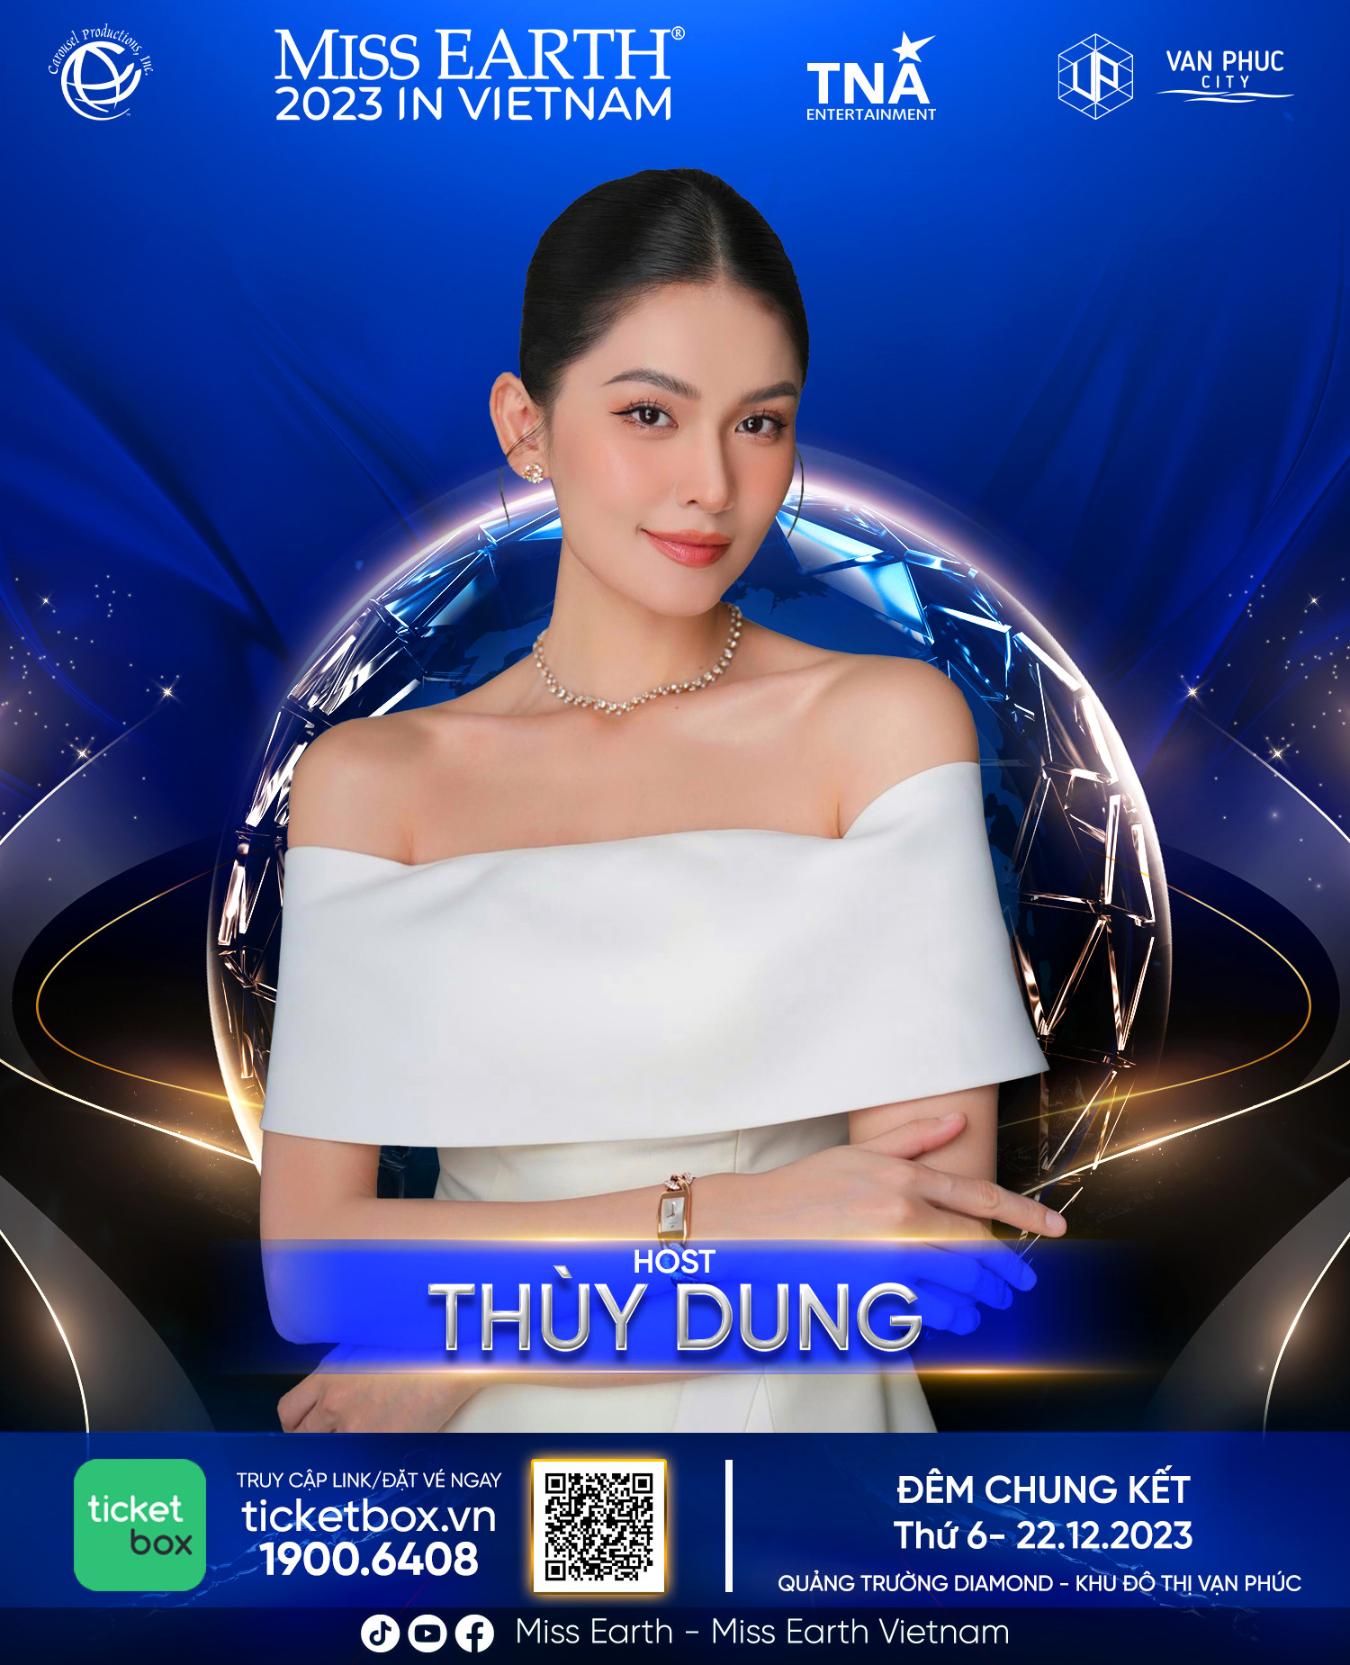 Host Thuy Dung Hé lộ dàn nghệ sĩ trình diễn trong chung kết Miss Earth 2023